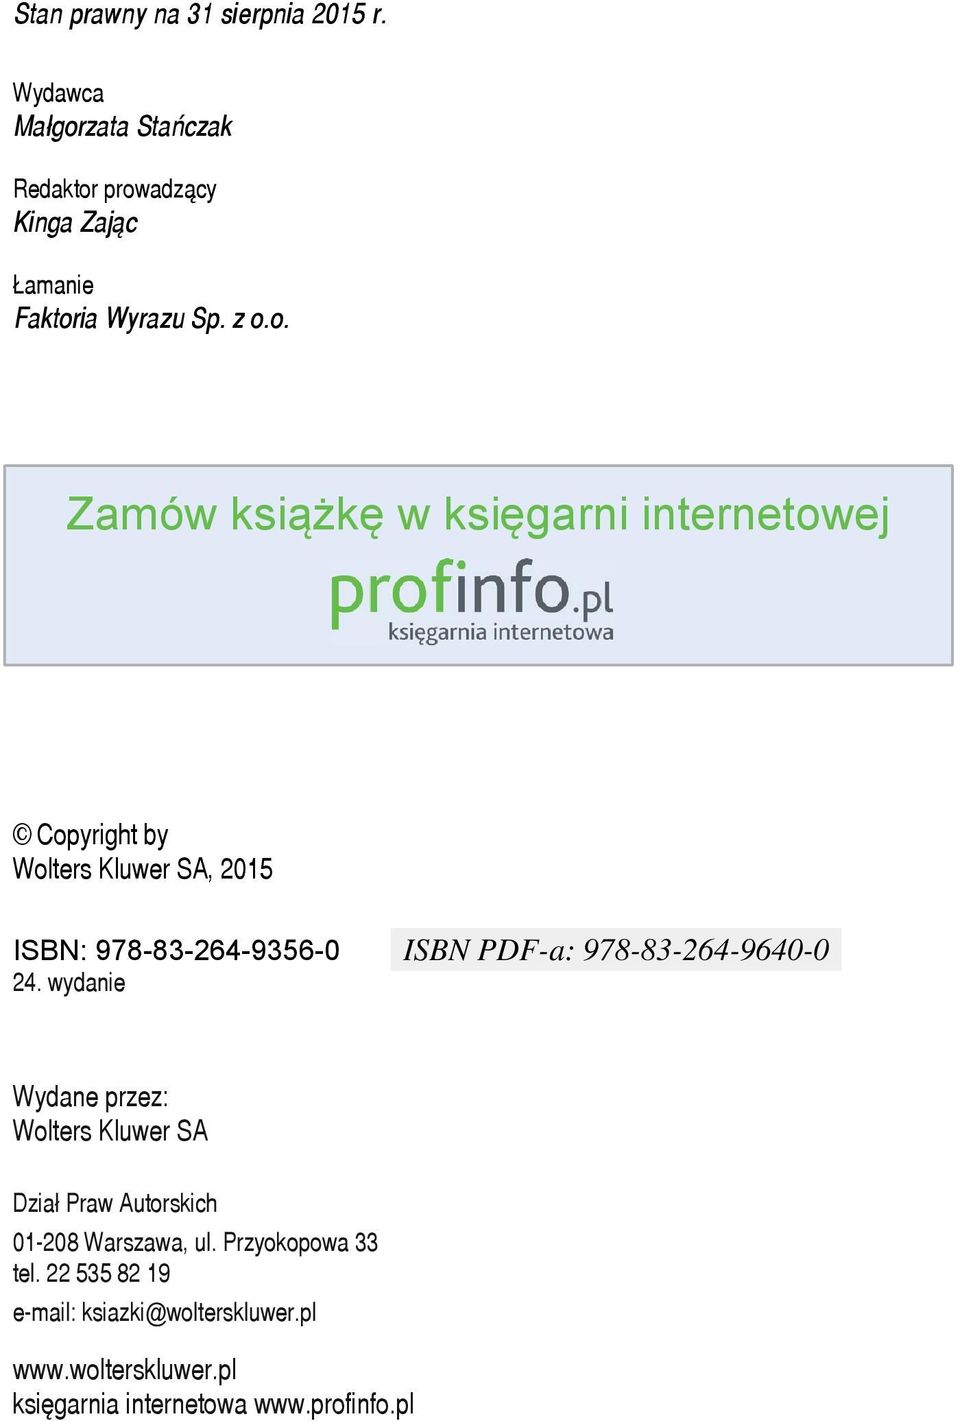 wydanie ISBN PDF-a: 978-83-264-9640-0 Wydane przez: Wolters Kluwer SA Dział Praw Autorskich 01-208 Warszawa, ul.